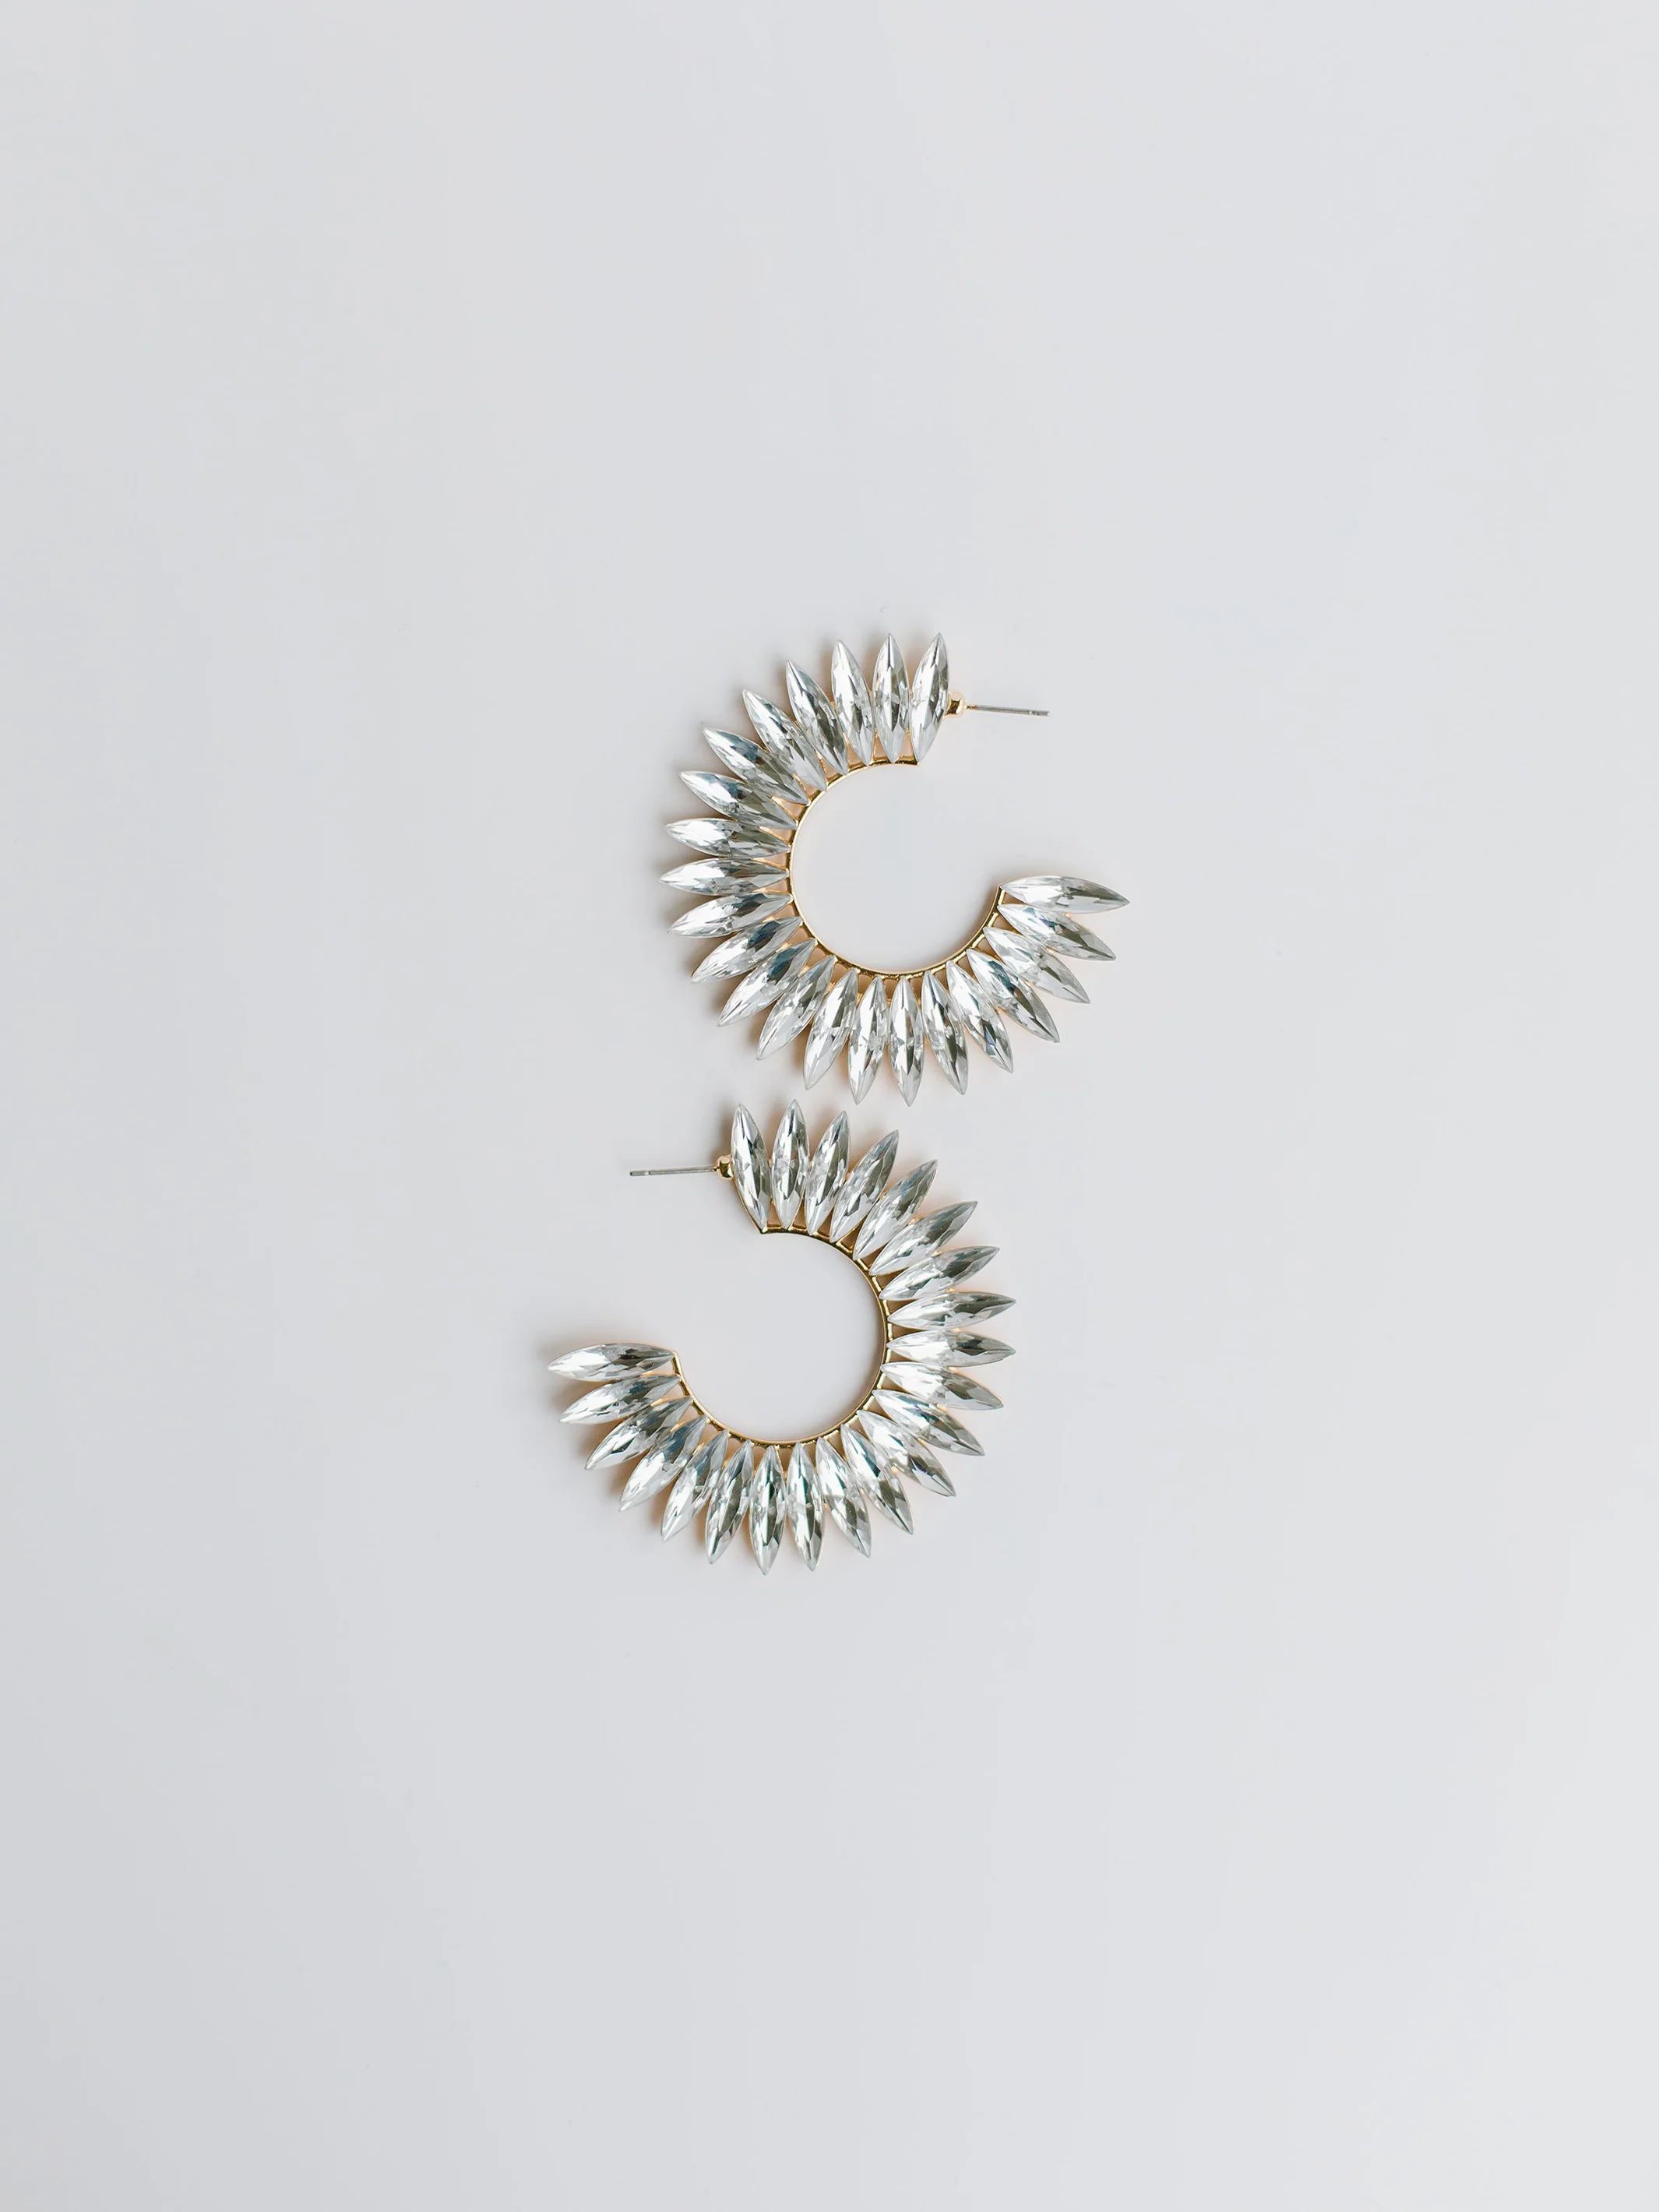 Eileen White Earrings | Michelle McDowell